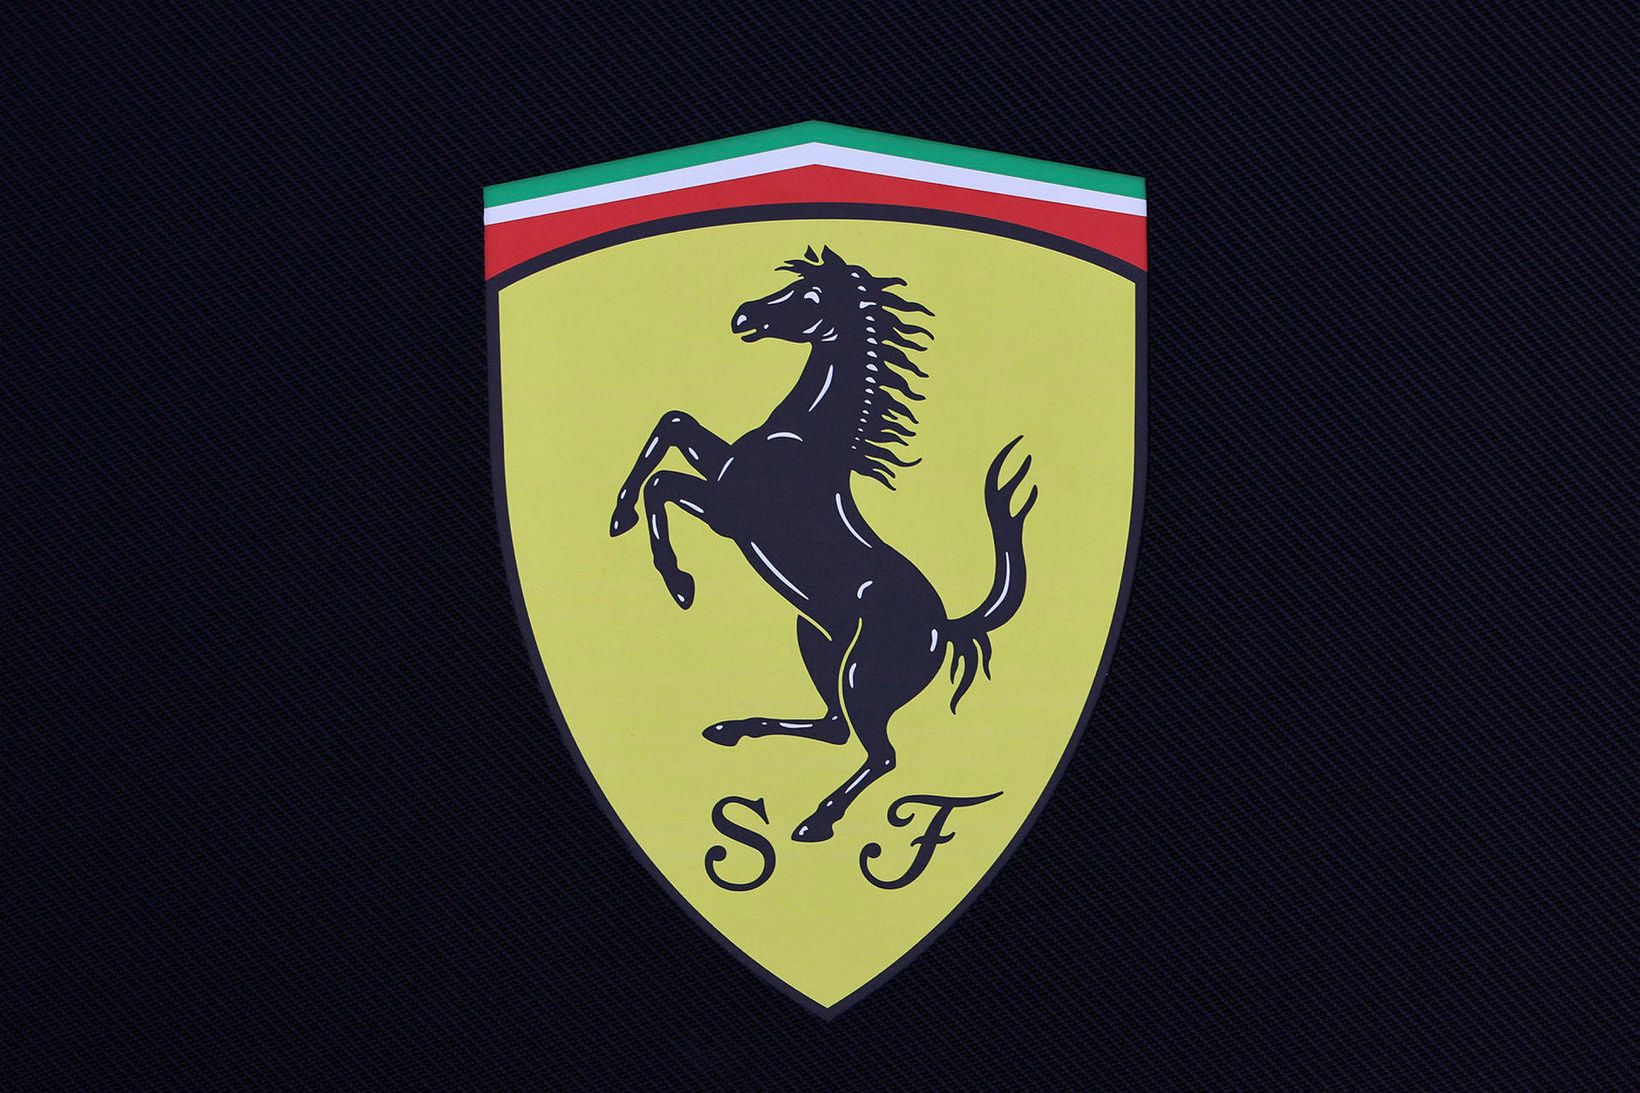 Merki ítalska bílaframleiðands Ferrari.